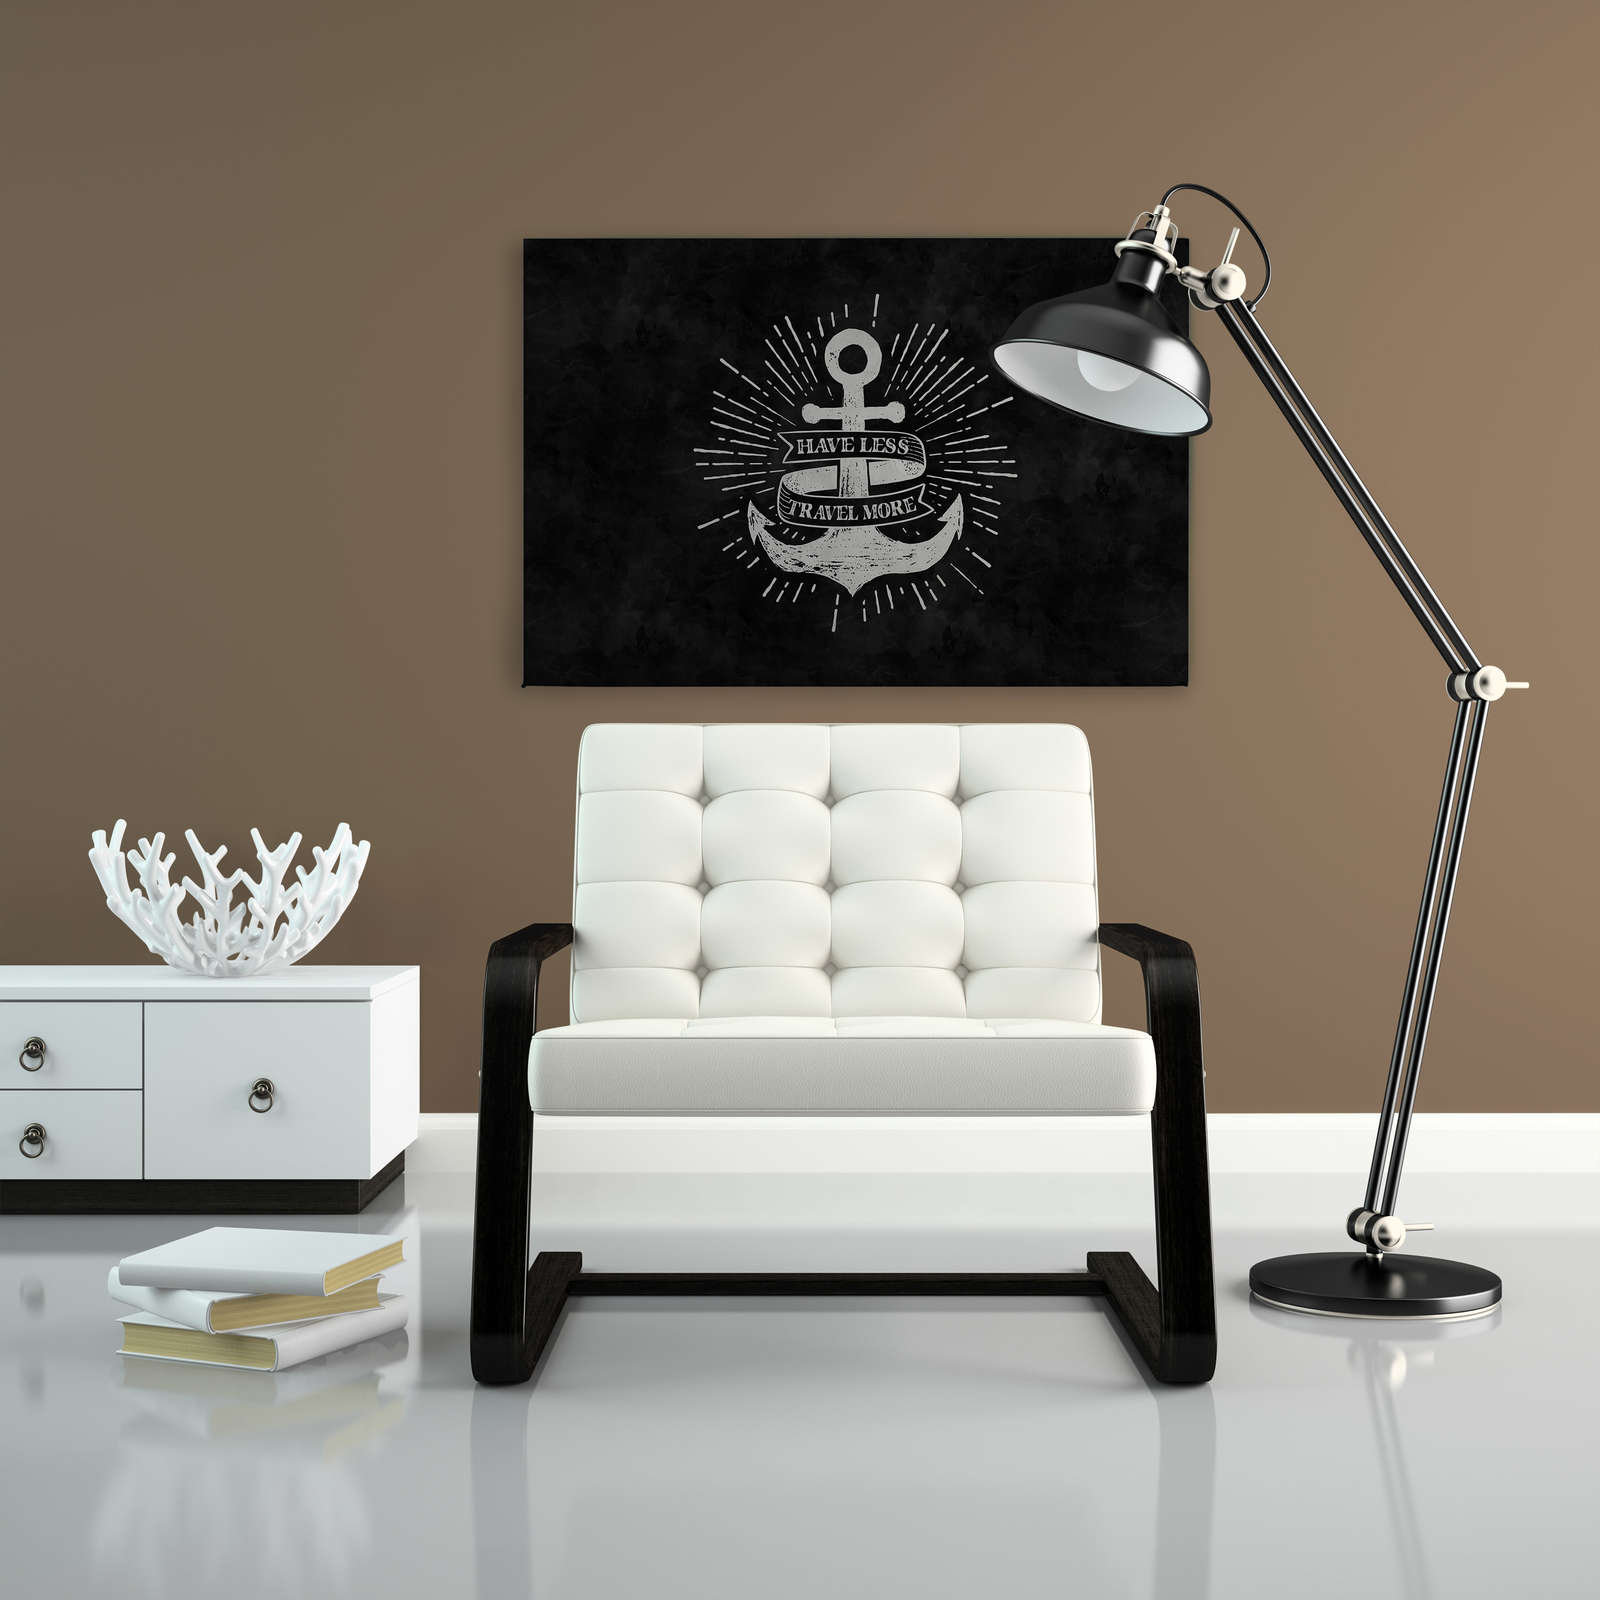             Zwart en wit schoolbord look canvas schilderij anker ontwerp - 0.90 m x 0.60 m
        